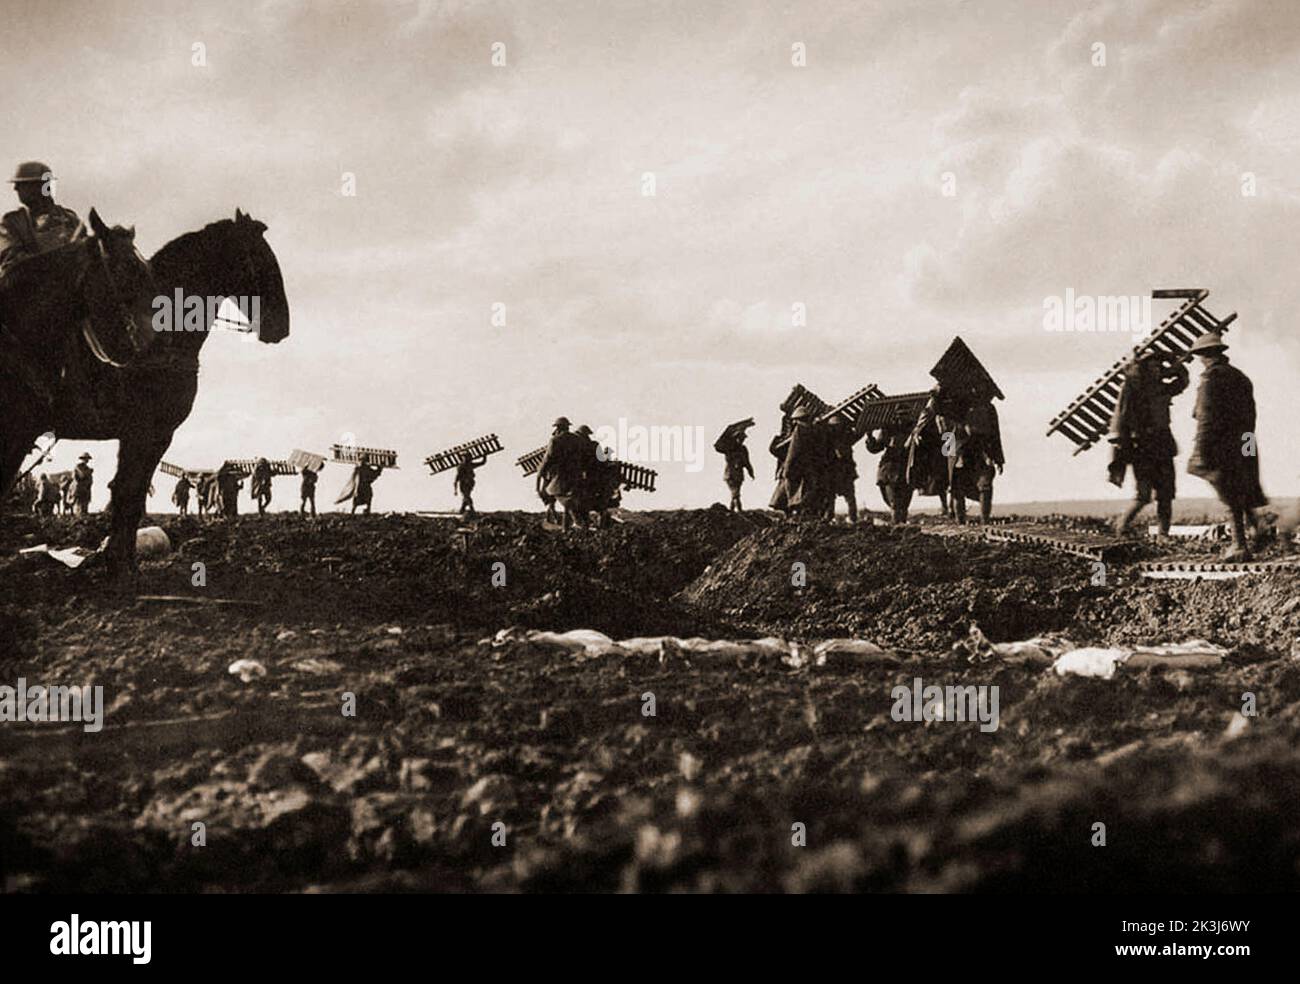 Soldados que llevaban tablas de pato durante la tercera Batalla de Ypres en 1917, diseñada por Sir Douglas Haig para capturar la cresta de Passchendaele. Fotografía de Frank Hurley (1885 1962) Un fotógrafo australiano. Foto de stock